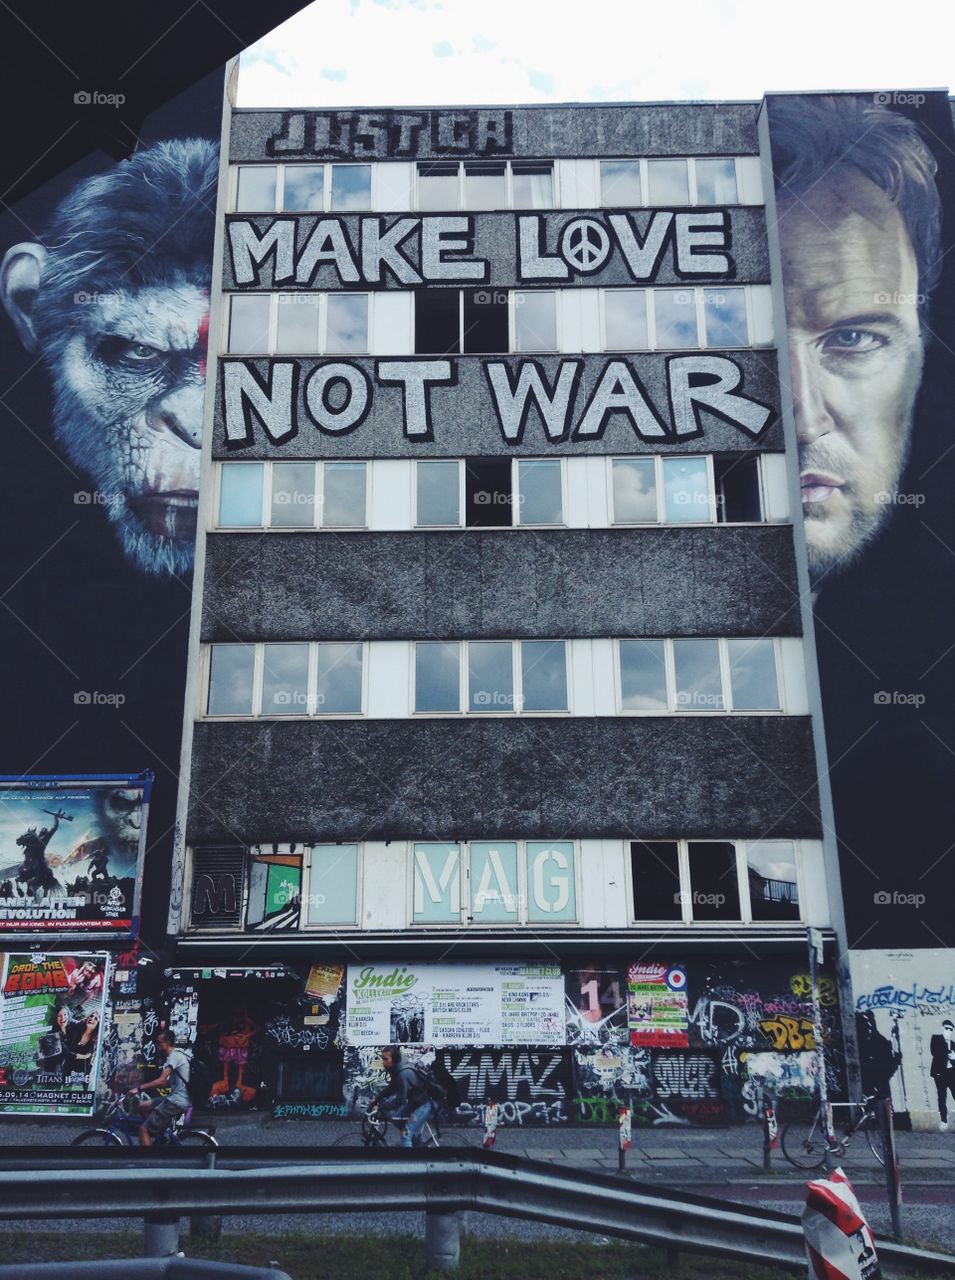 Not war. Walls